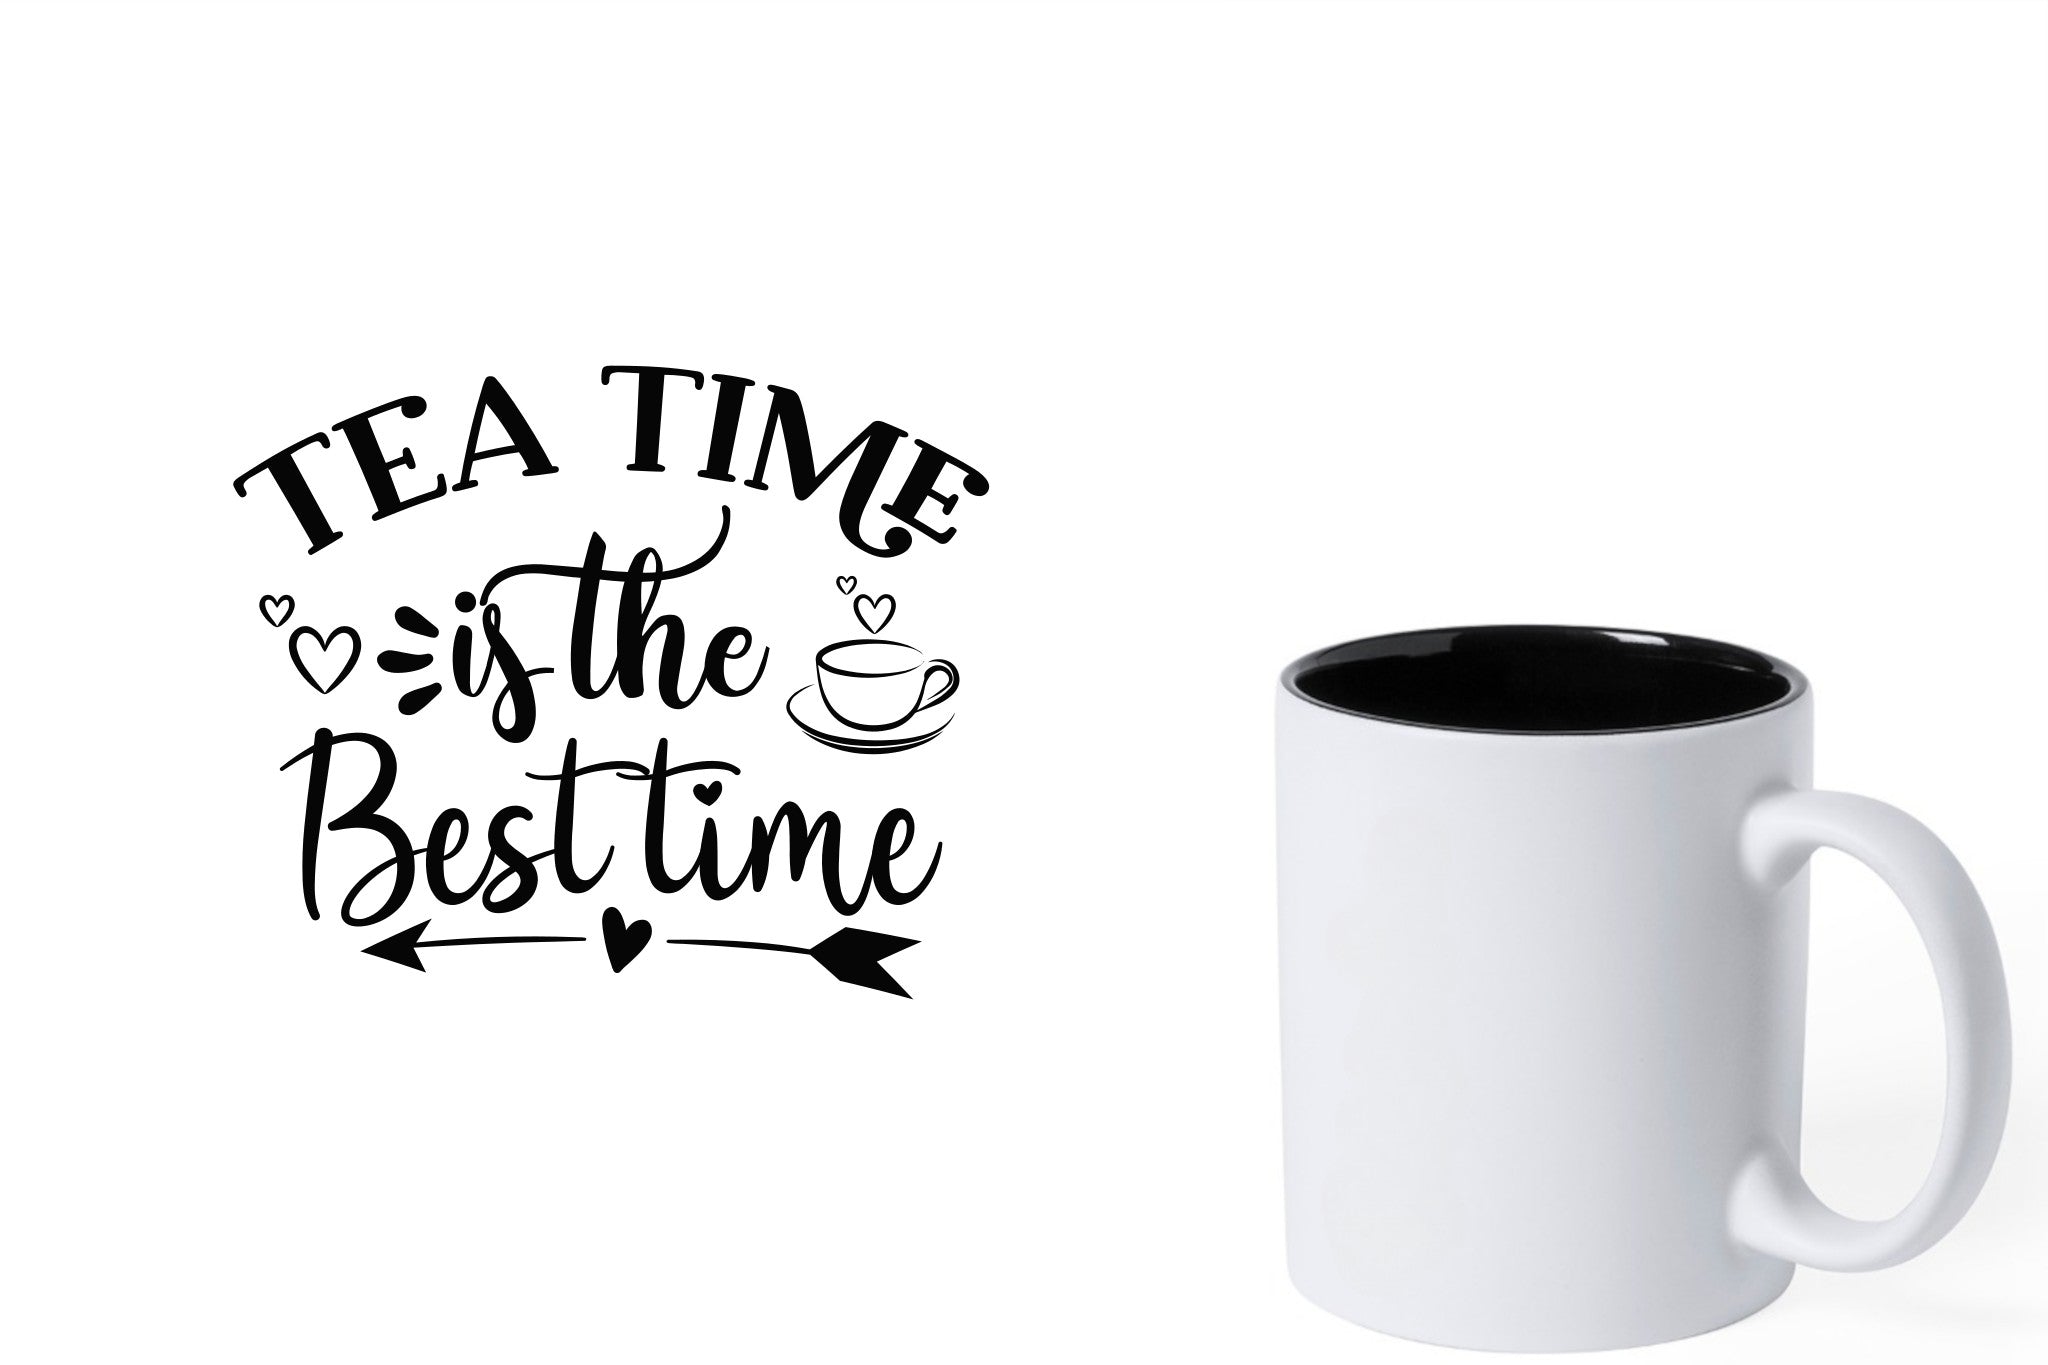 Witte keramische mok met zwarte gravure  'Tea time is the best time'.